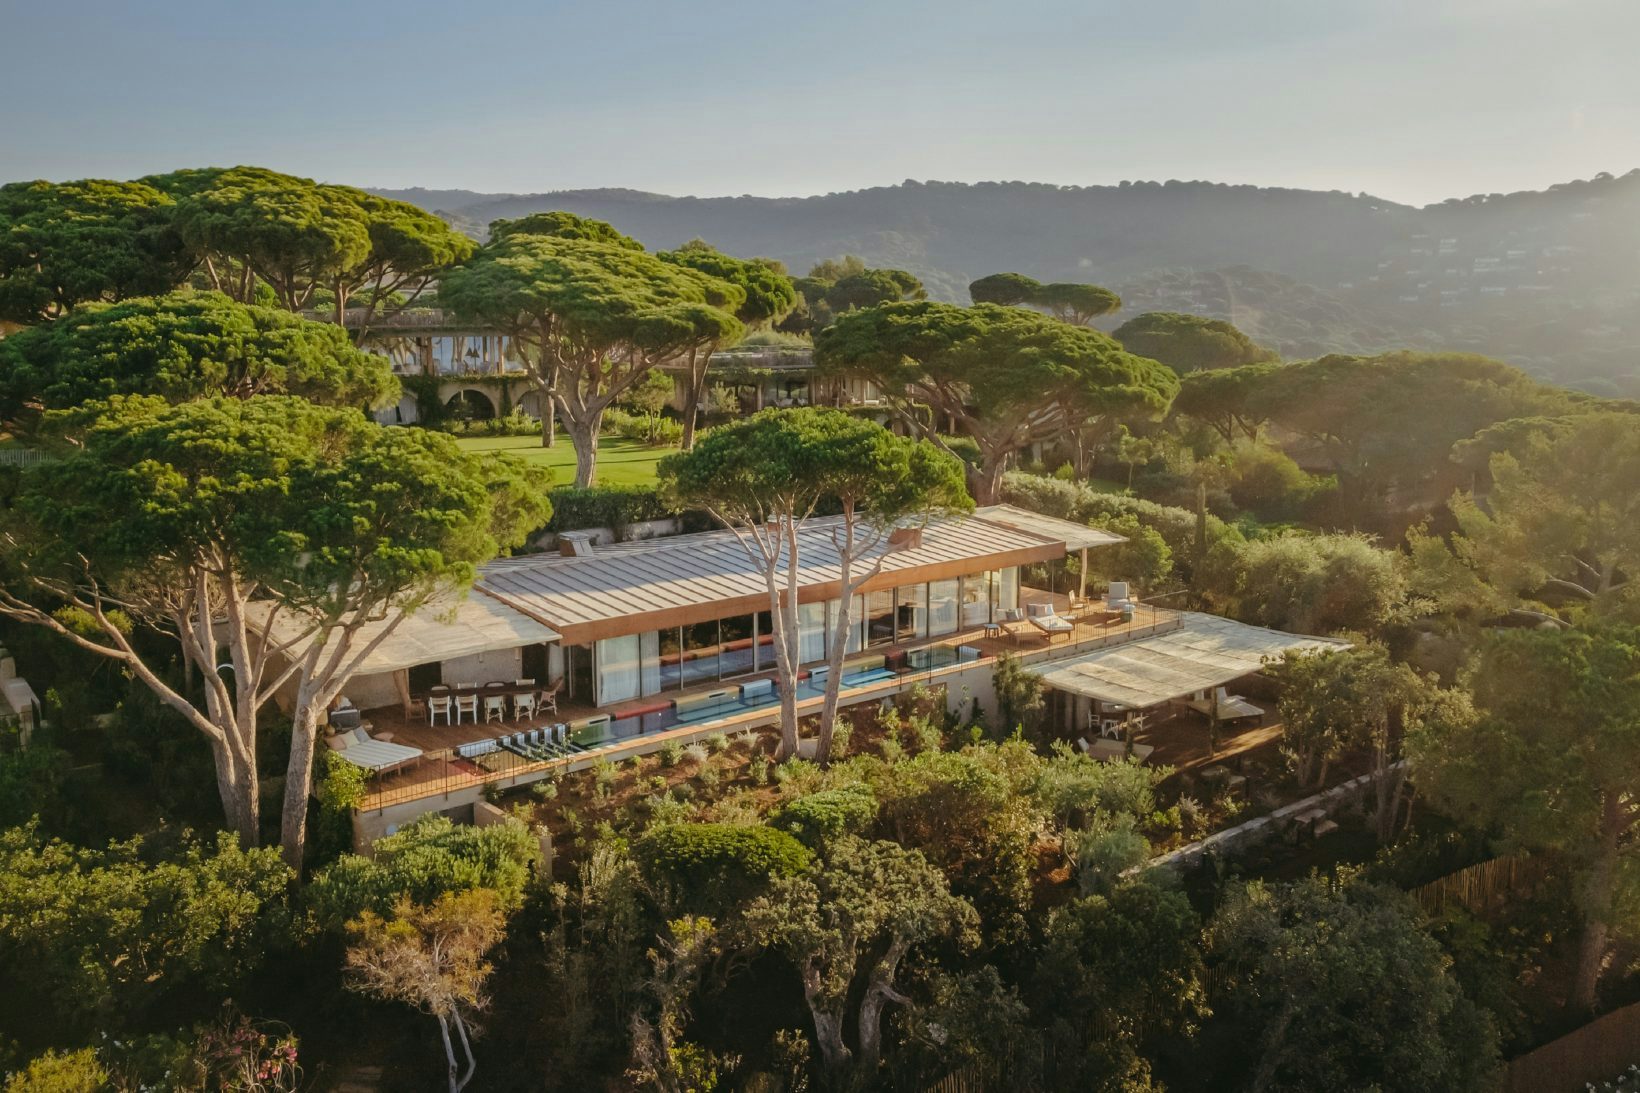 Les hôtels de luxe multiplient les constructions de villas à louer